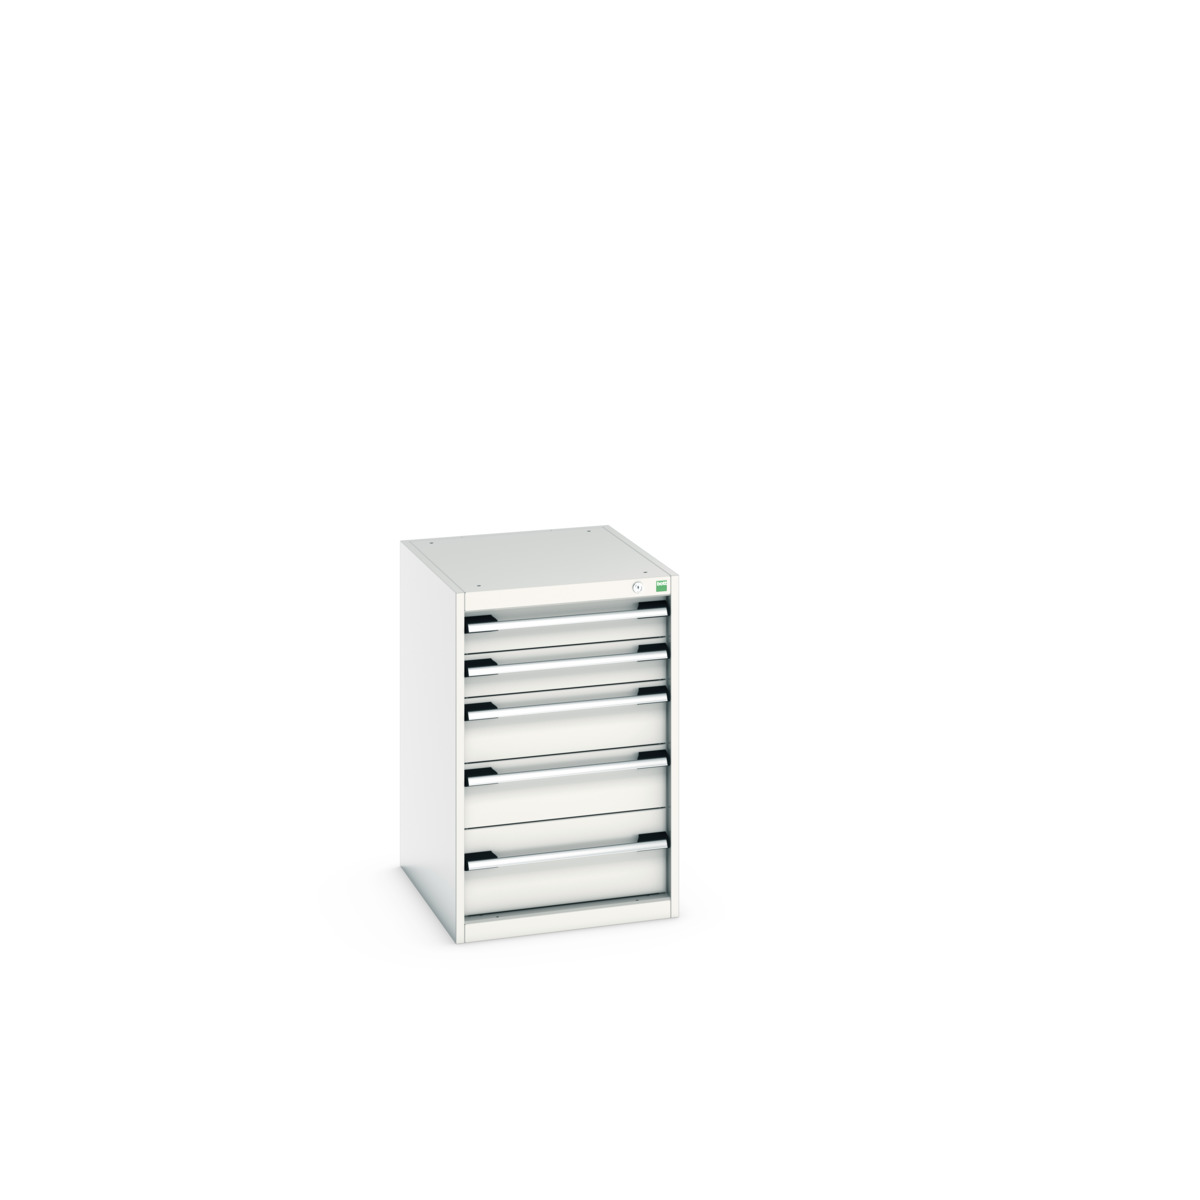 40018037.16V - cubio drawer cabinet